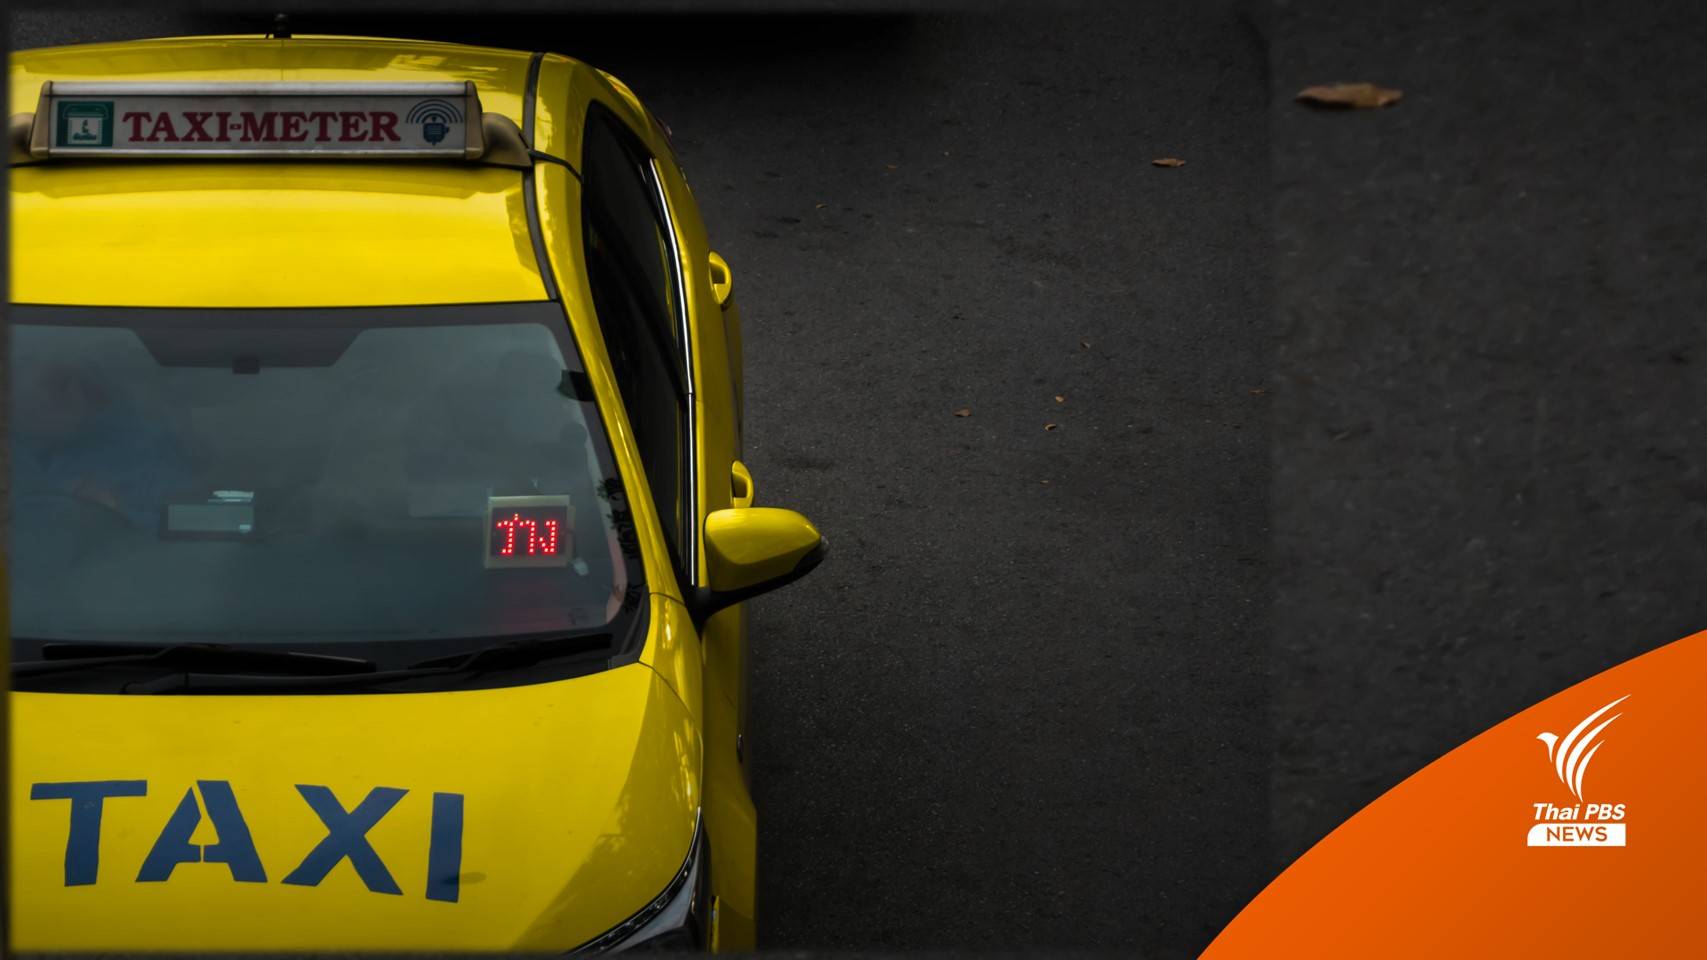 16 ม.ค.นี้ ขนส่งฯ เริ่มเปิดให้แท็กซี่ปรับจูนค่าโดยสารใหม่